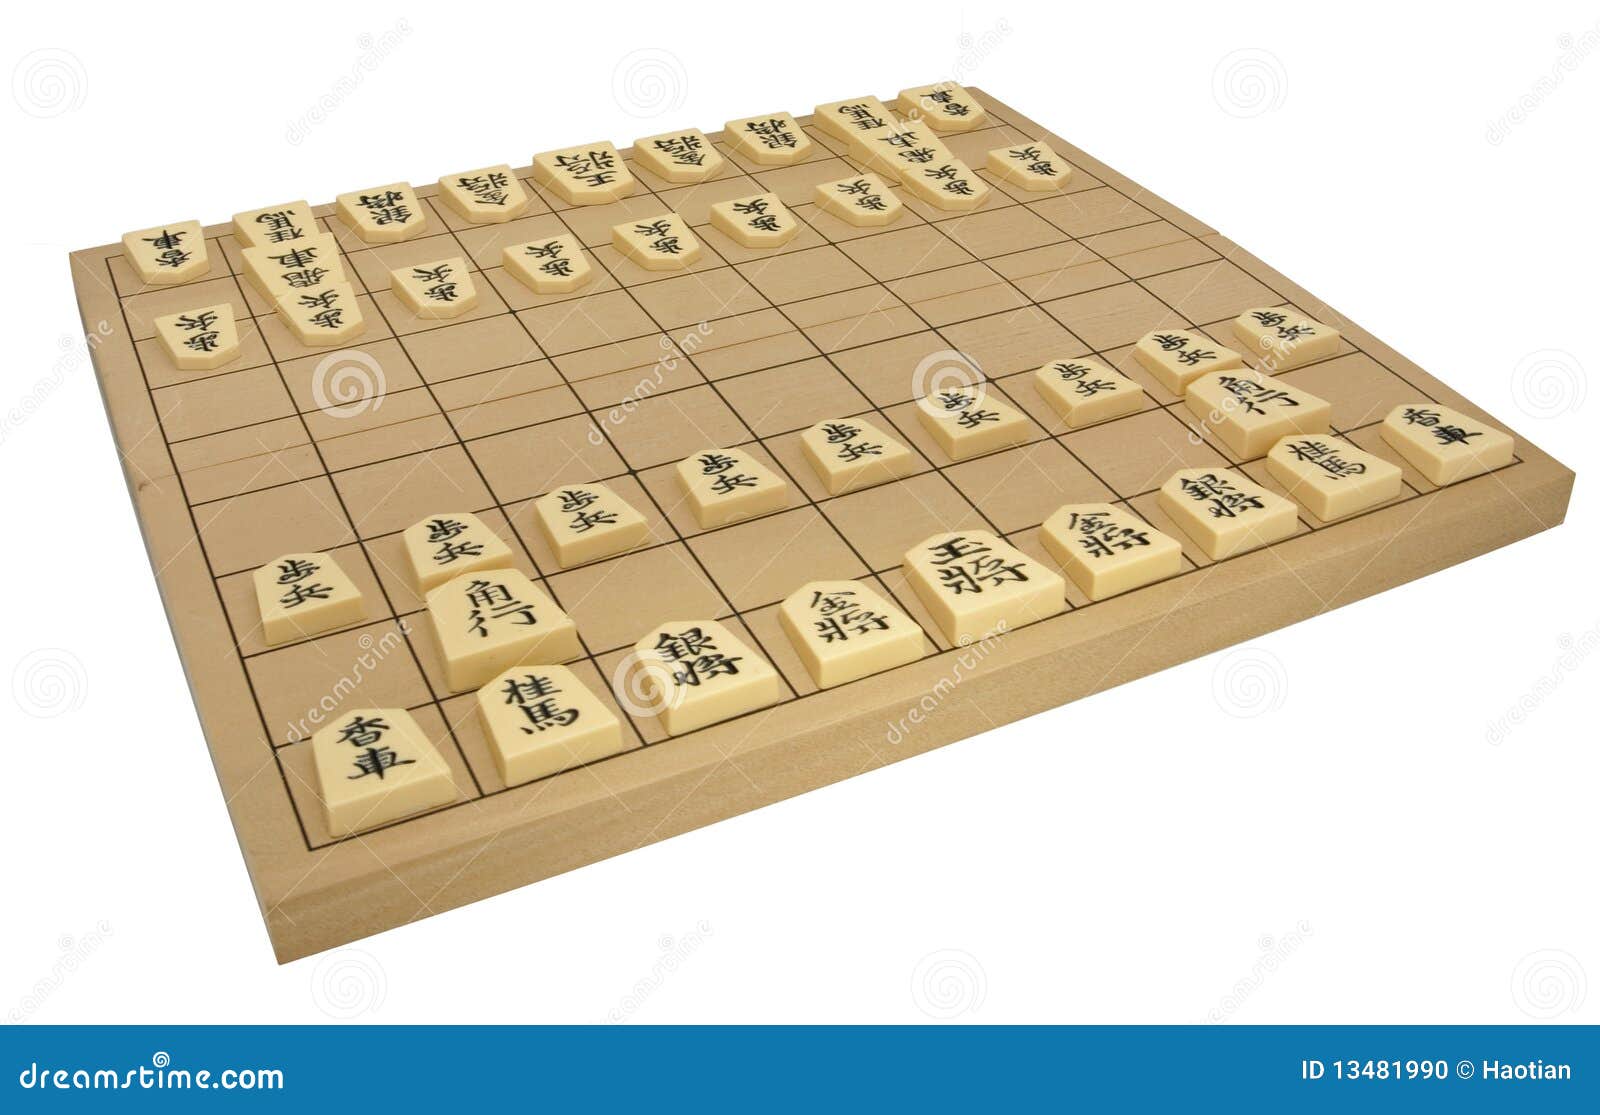 Art Japan: escrevendo o jogo shogi (jogo tradicional de xadrez